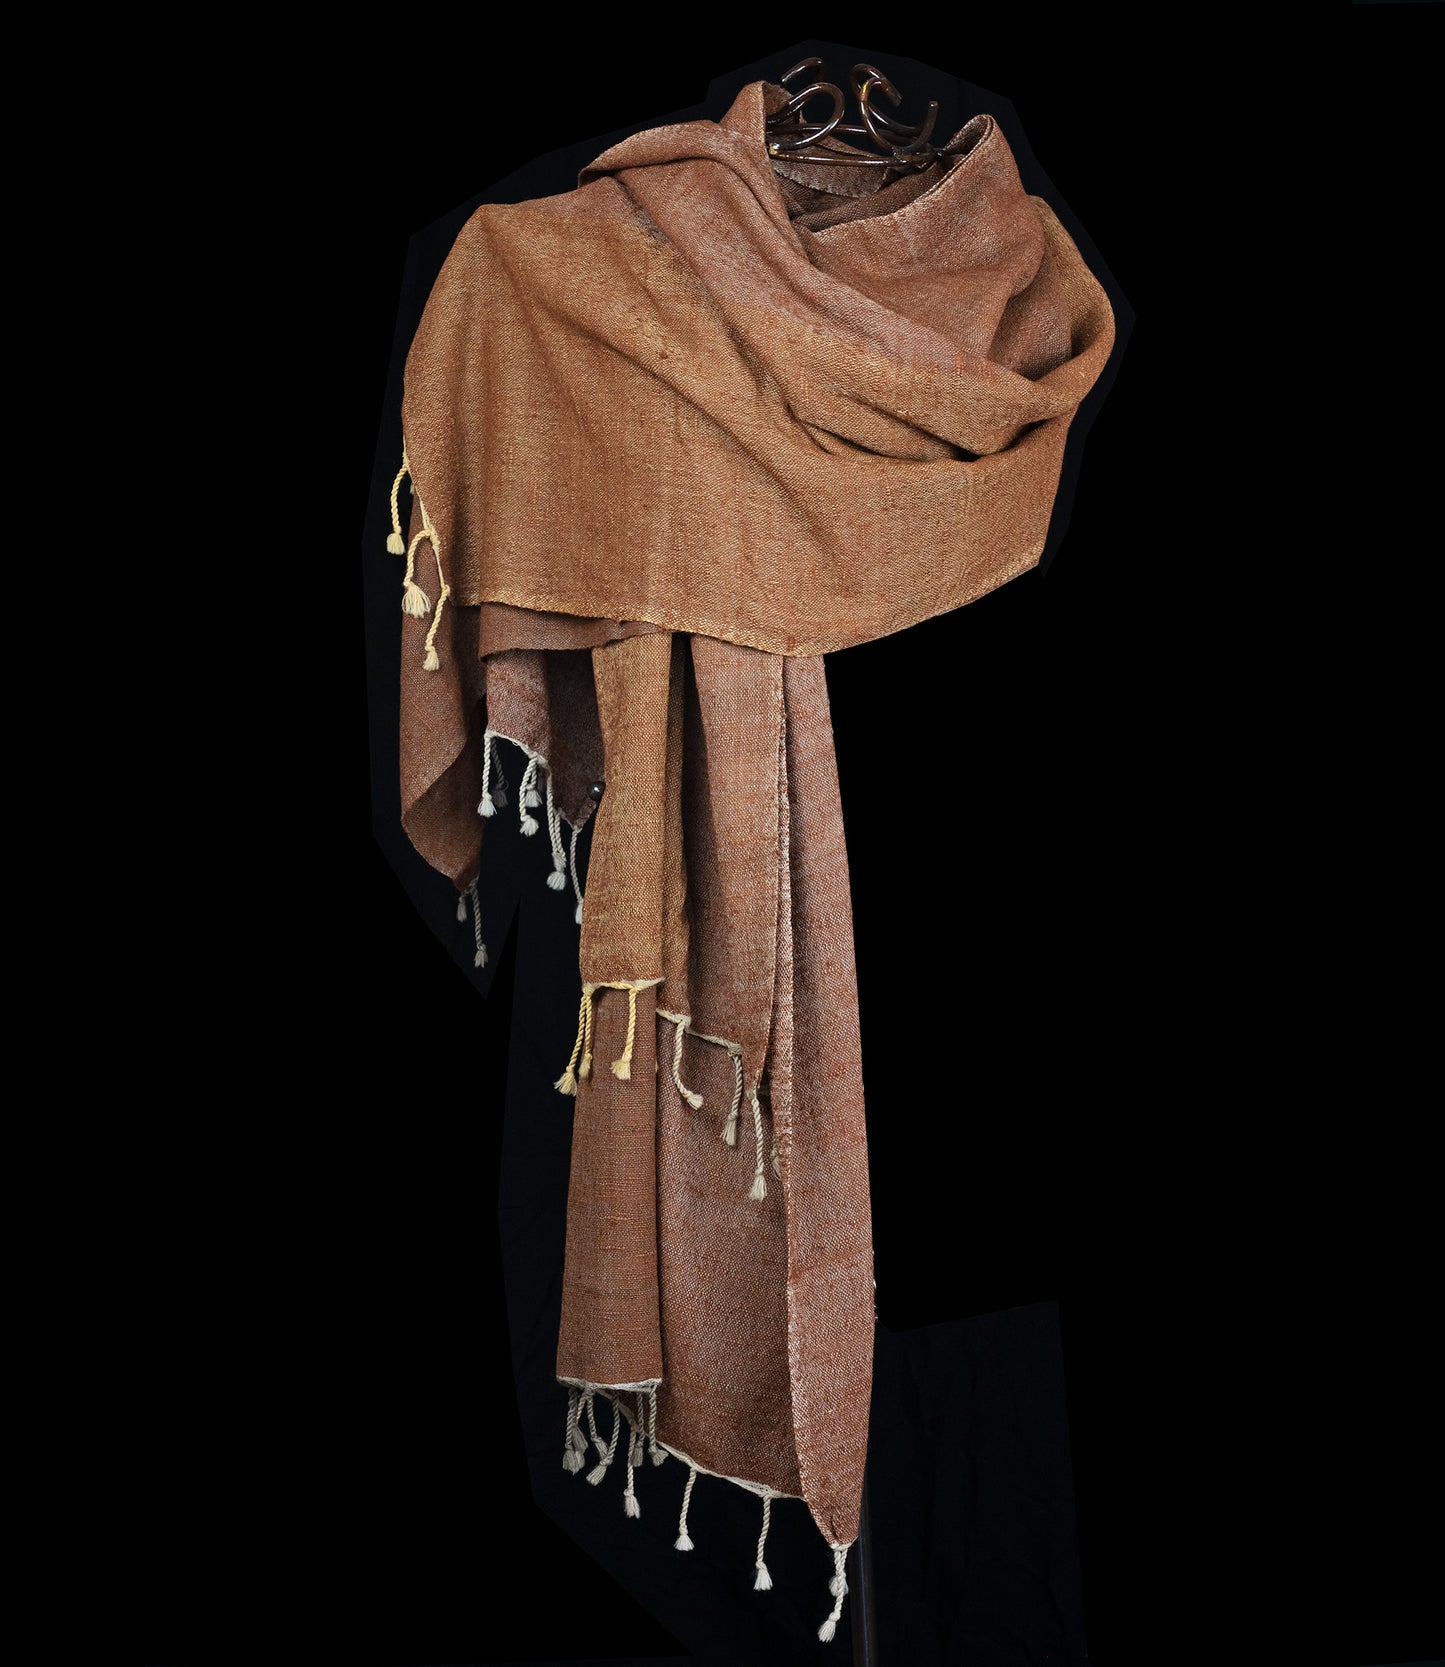 Goudbruine sjaal, wol met zijde, natuurlijke kleuren